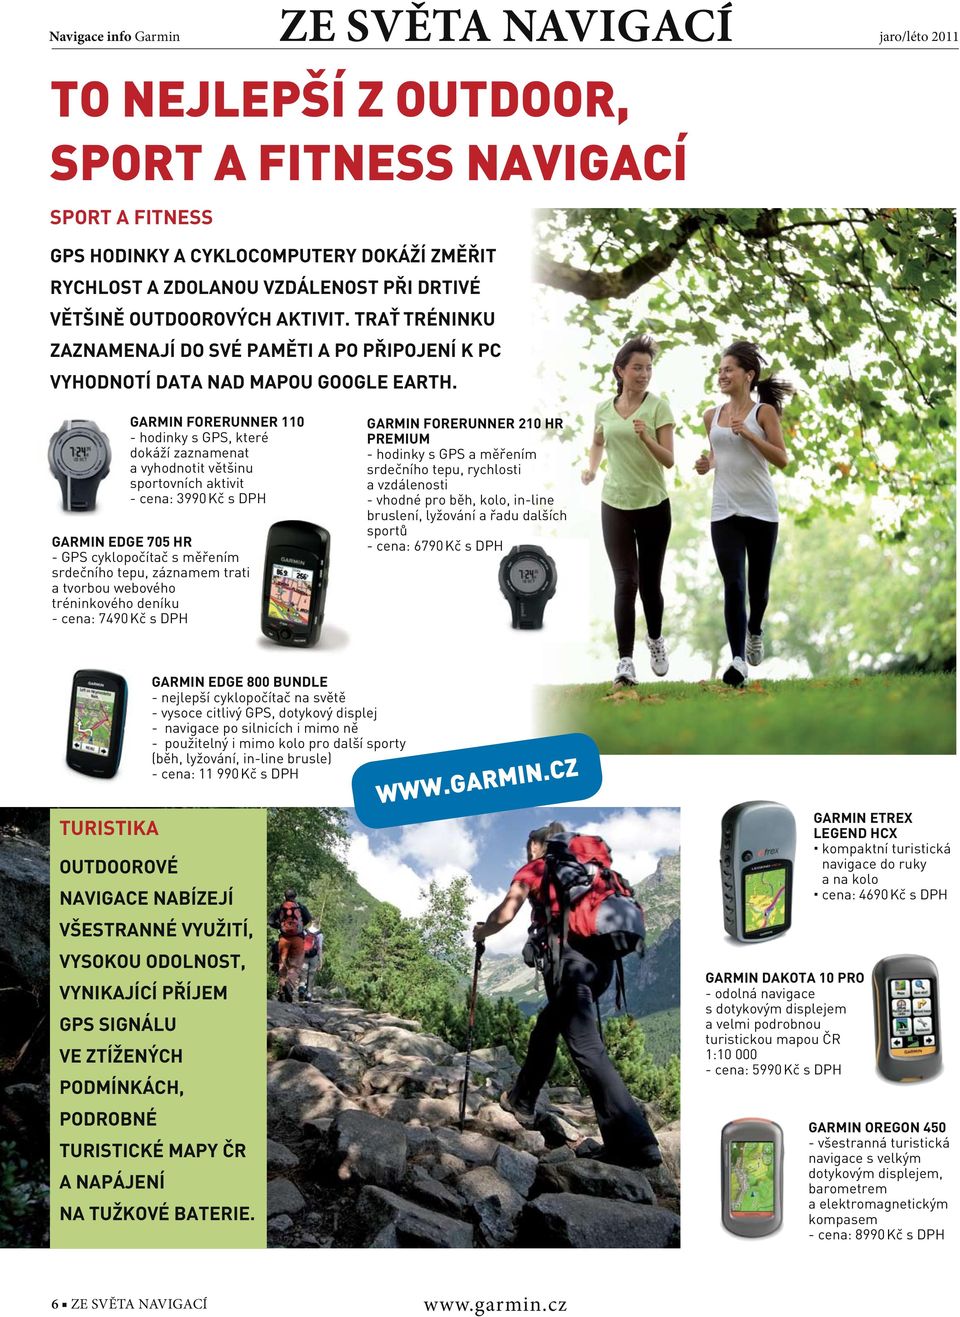 GARMIN FORERUNNER 110 - hodinky s GPS, které dokáží zaznamenat a vyhodnotit většinu sportovních aktivit - cena: 3990 Kč s DPH GARMIN EDGE 705 HR - GPS cyklopočítač s měřením srdečního tepu, záznamem